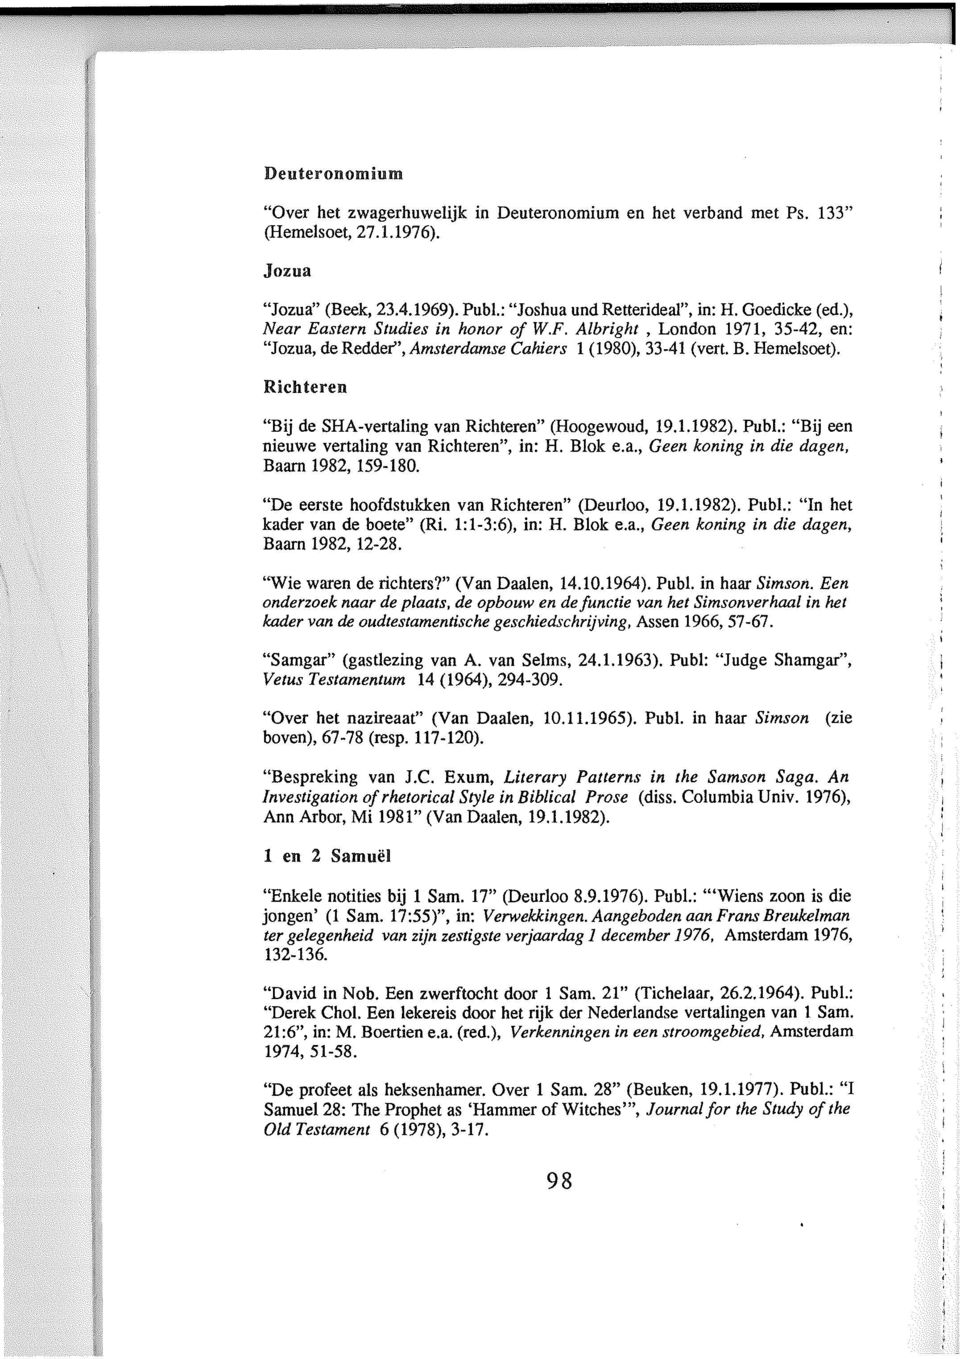 Richteren "Bij de SHA-vertaling van Richteren" (Hoogewoud, 19.1.1982). Publ.: "Bij een nieuwe vertaling van Richteren", in: H. Blok e.a., Geen koning in die dagen, Baarn 1982, 159-180.